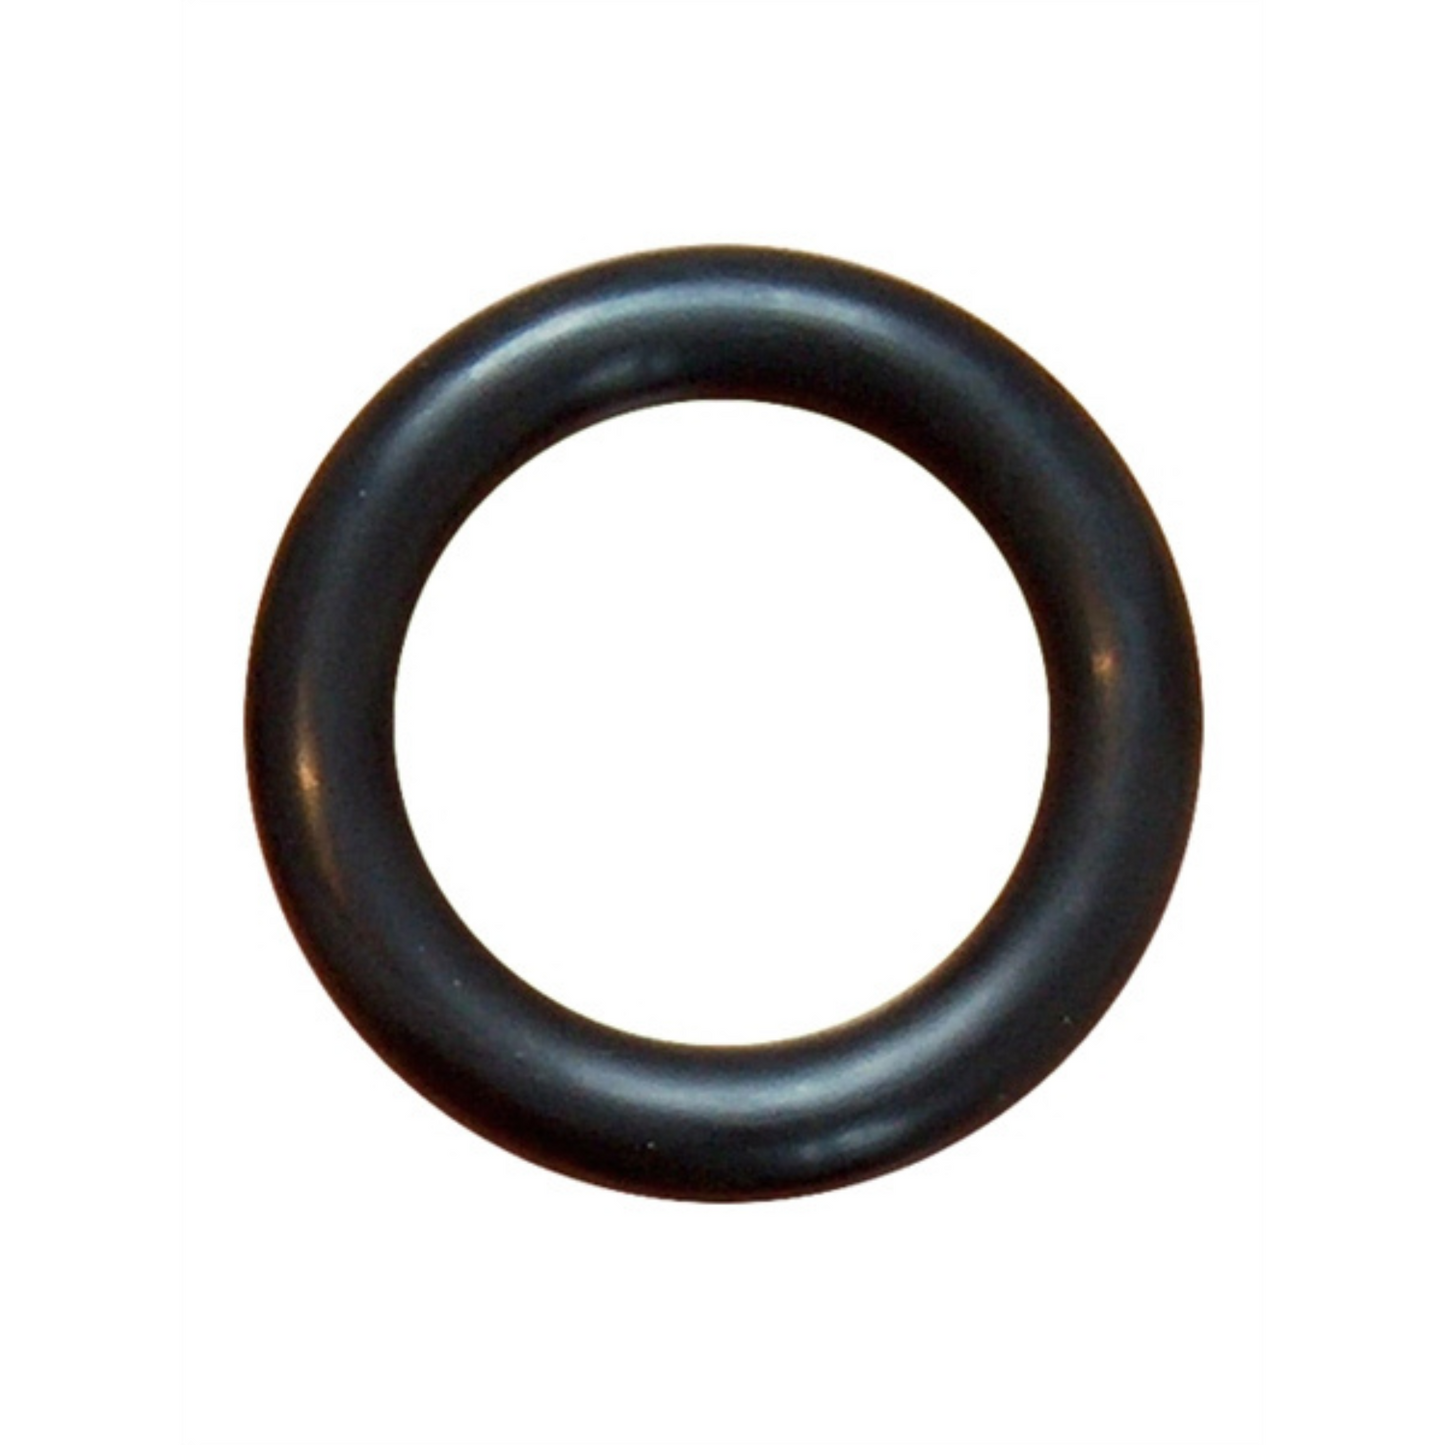 Dikke zwarte cockring met een diameter van 55 mm. Ontworpen door Mister B voor gay mannen en te koop bij Flavourez.